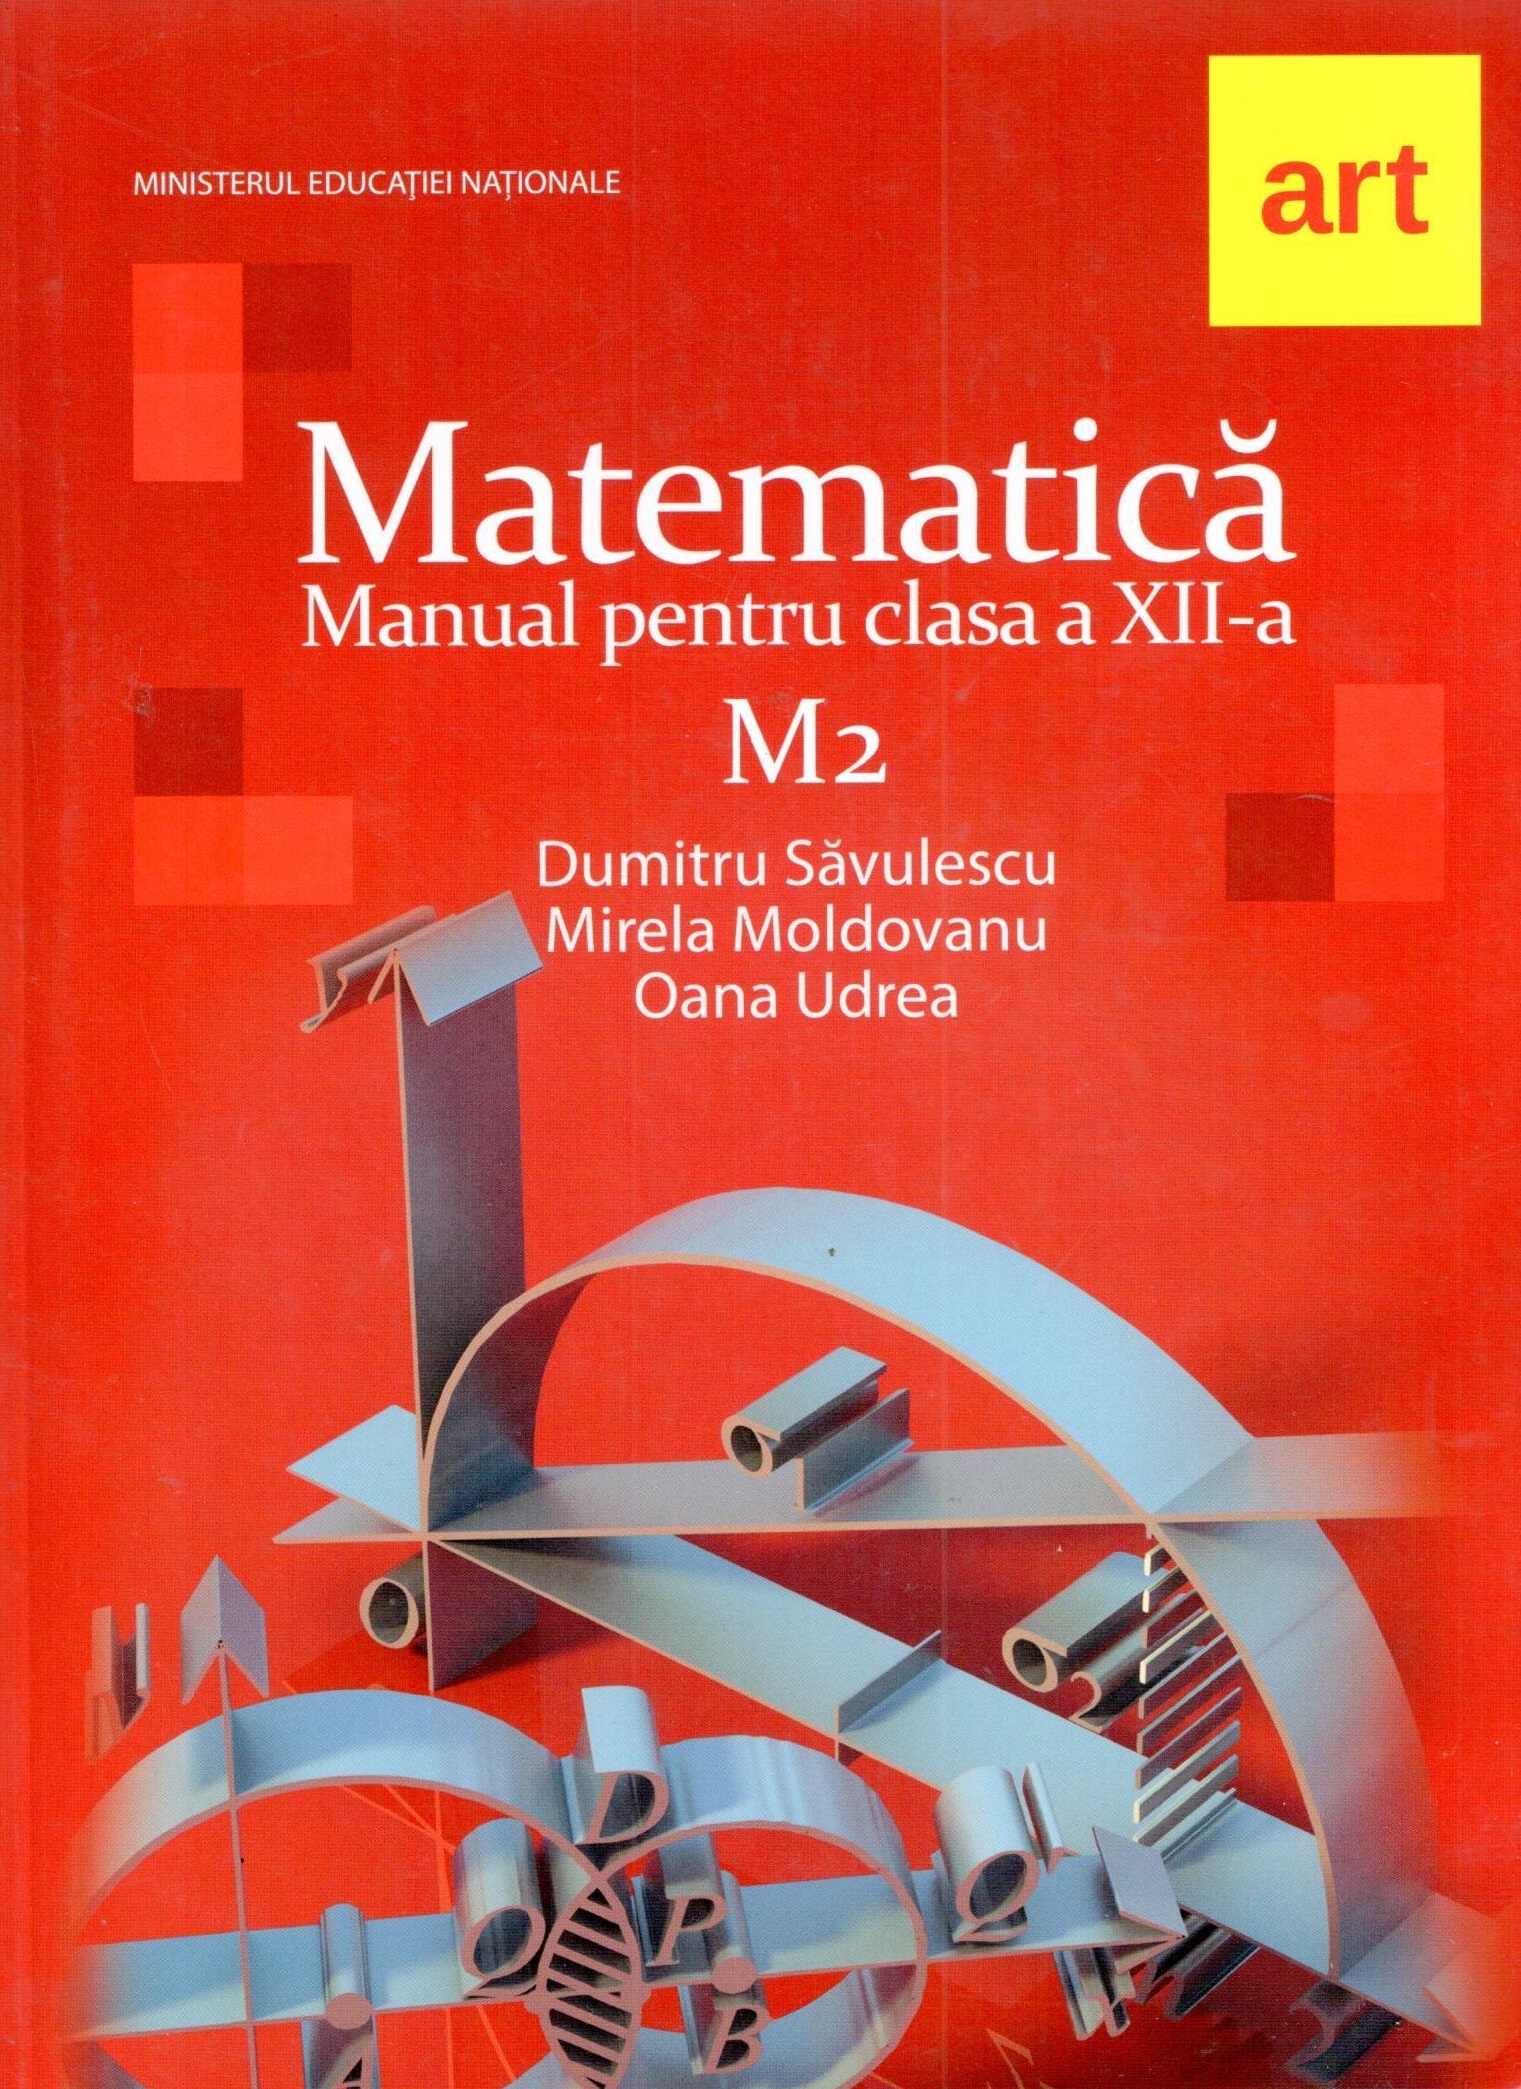 Manual matematica M2 pentru clasa a XII-a | Mirela Moldovan, Dumitru Savulescu Art Educational